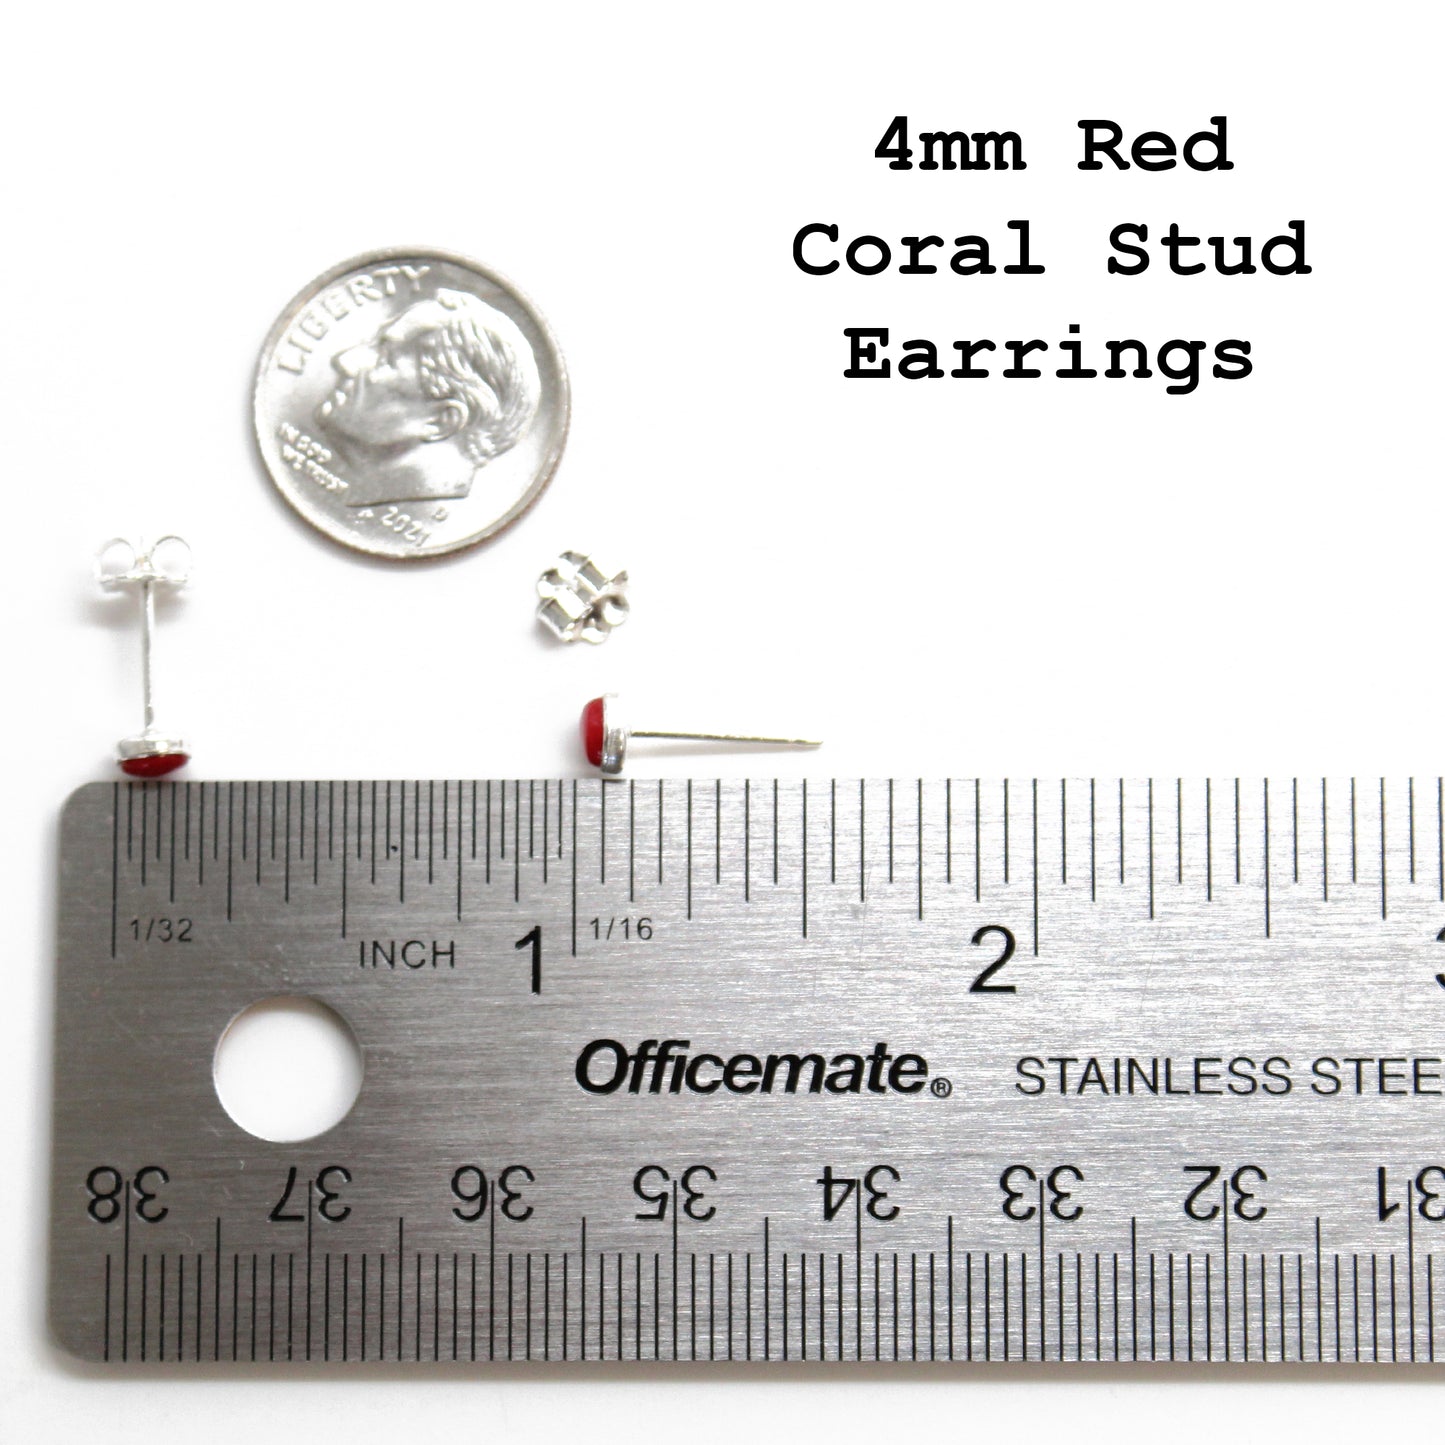 4mm Red Coral Stud Earrings